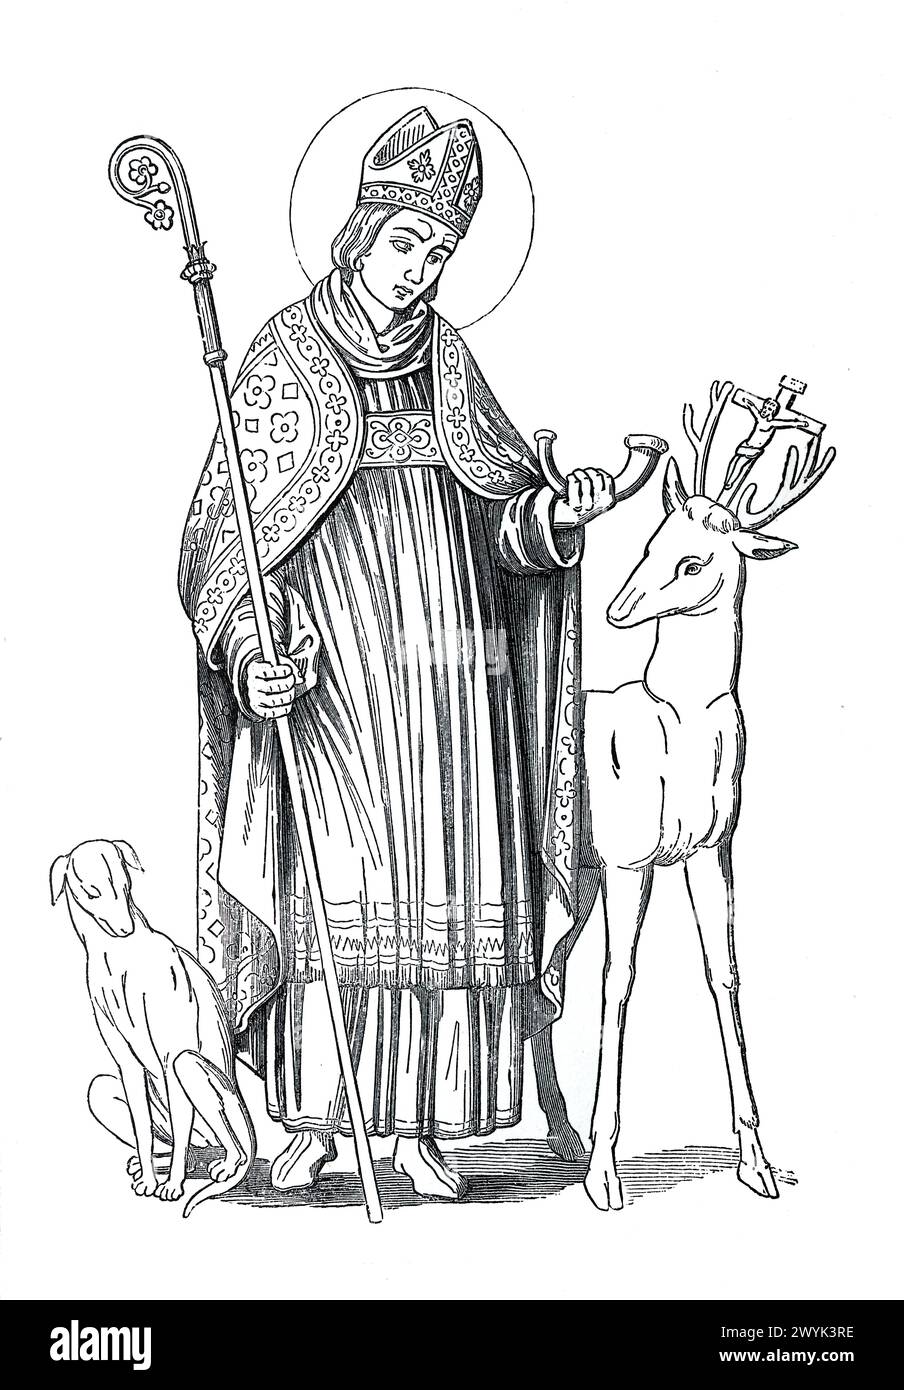 Sant'Uberto o Uberto, vescovo di Liegi: santo cristiano dell'VIII secolo. Incisione da vite dei Santi (parte 1 novembre) del reverendo Sabin Baring-Gould, pubblicato nel 1898 Foto Stock